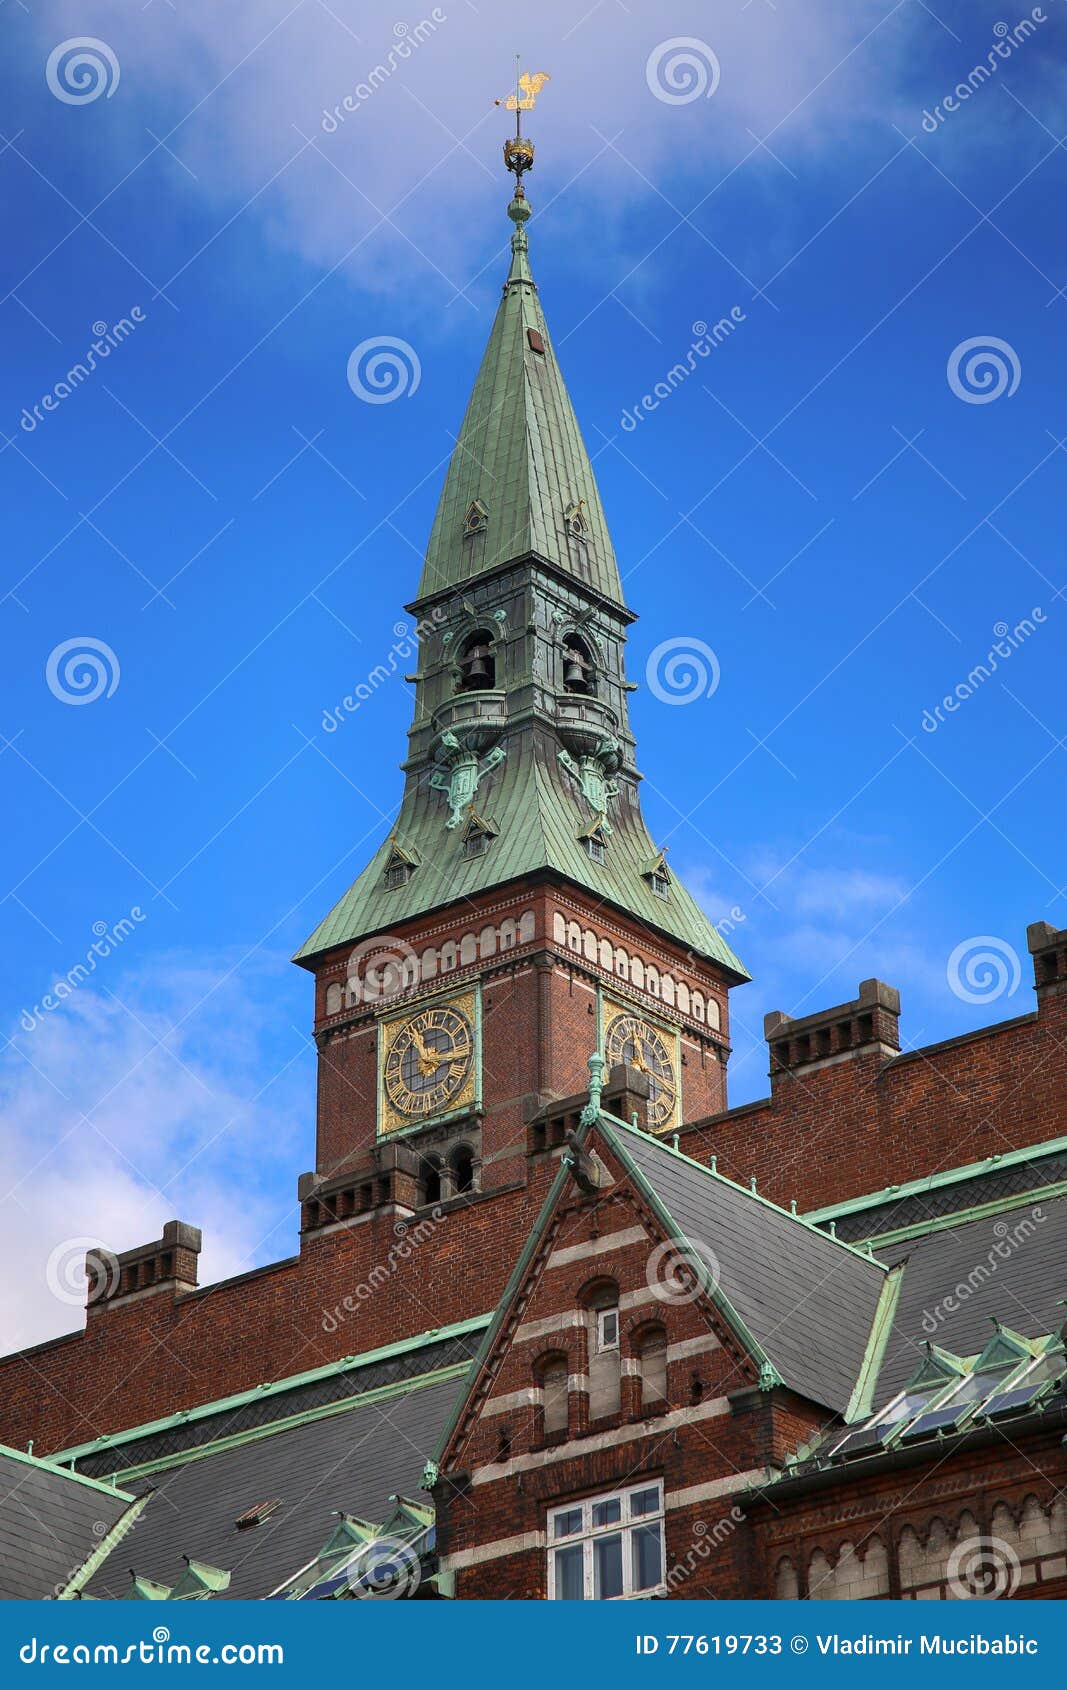 Copenhagen City Hall in Copenhagen, Denmark Stock Image - Image of ...